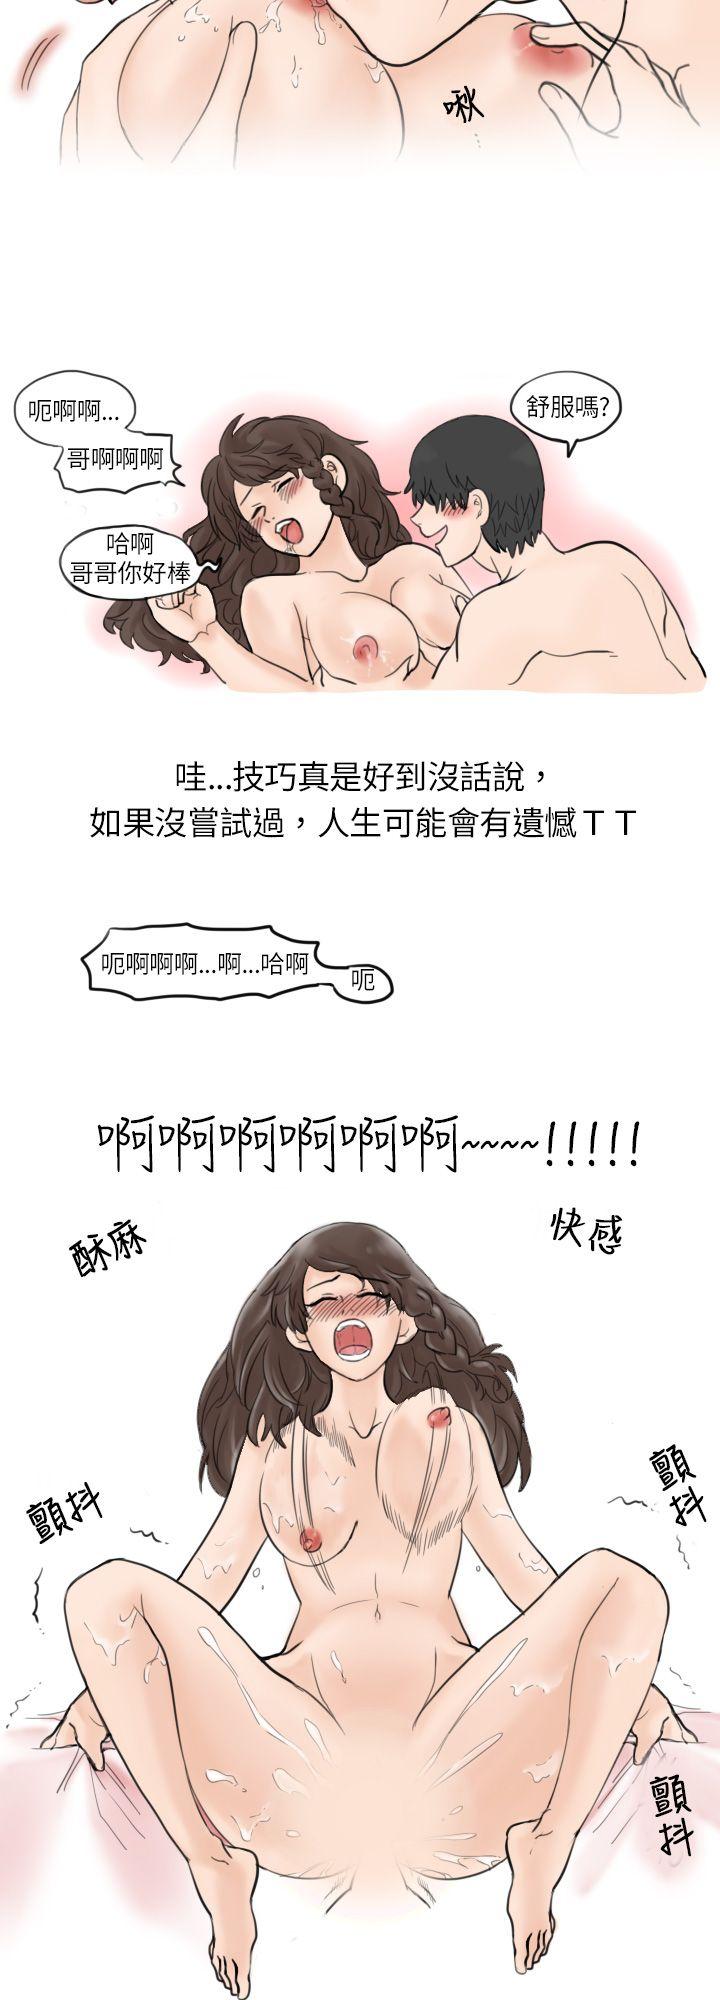 韩国污漫画 秘密Story 与学姊男友的糟糕事件(下) 8